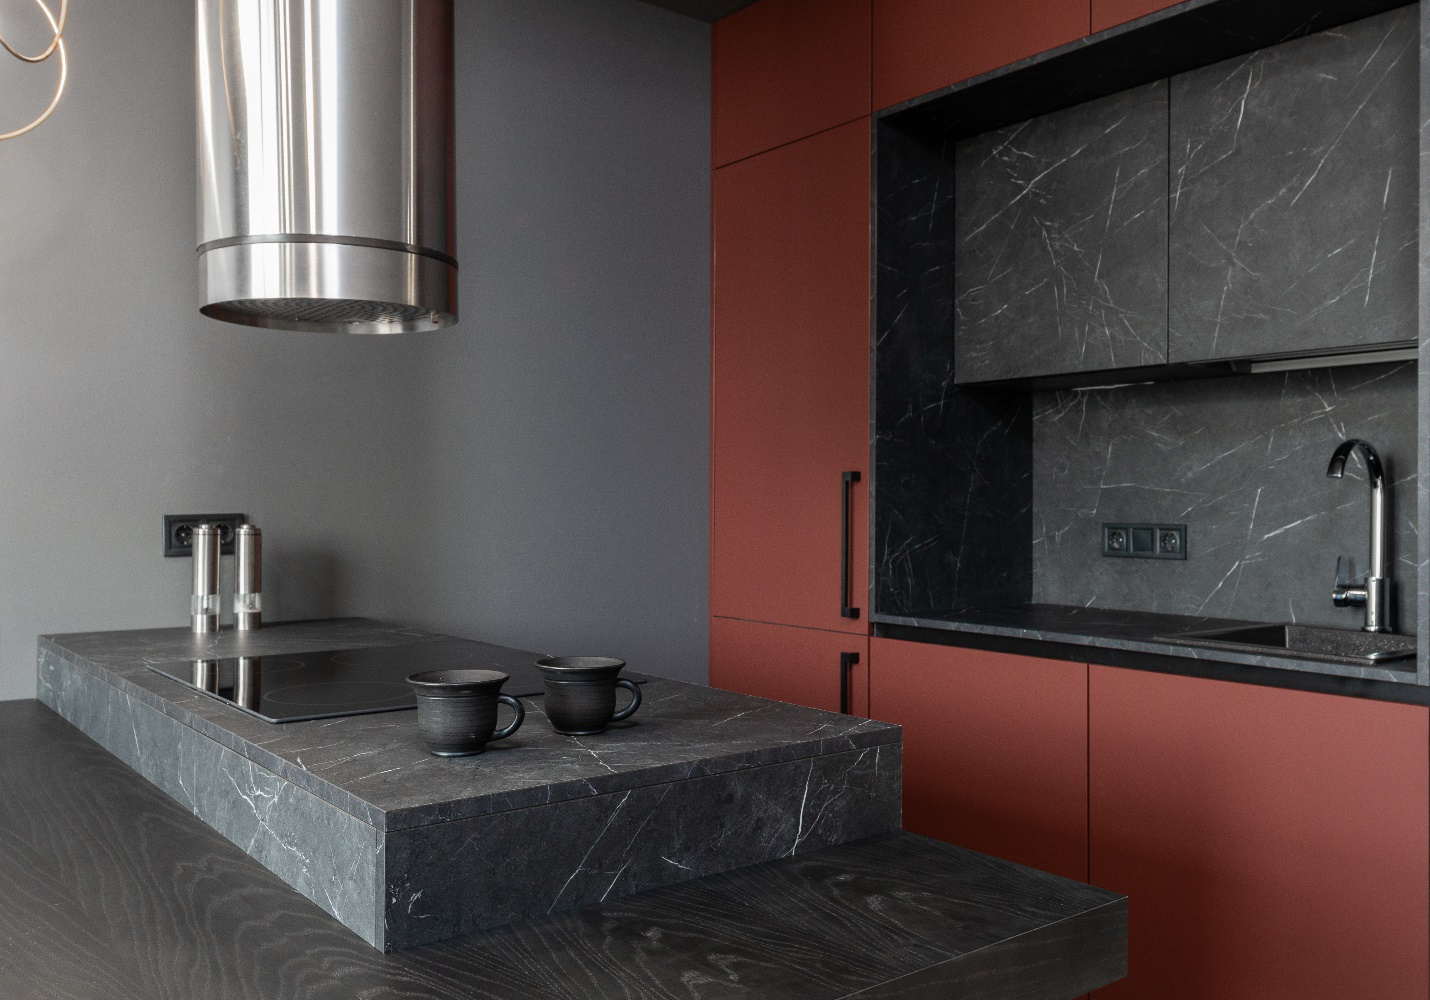 A sleek and modern, minimalist, kitchen design